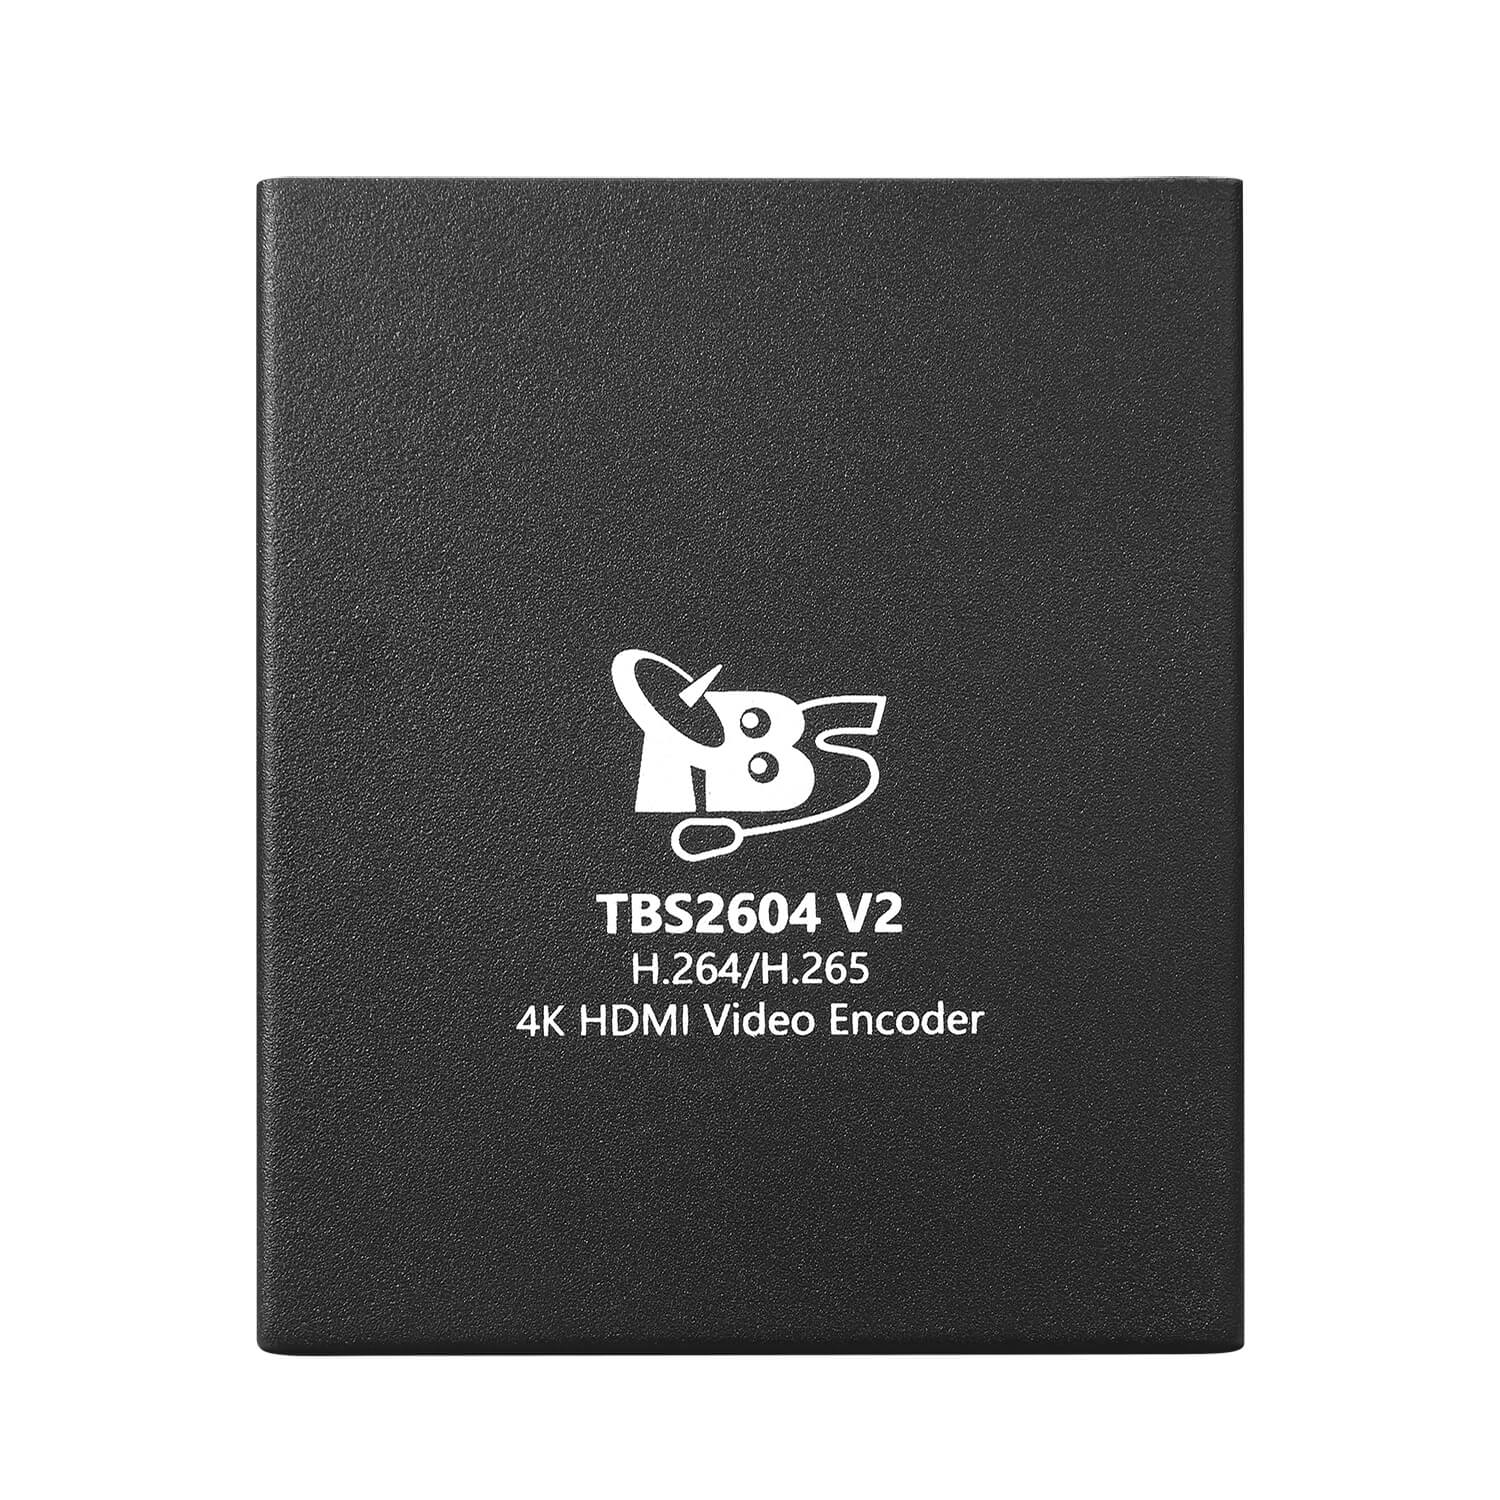 TBS2604V2 4K UHD HD H.265 & H.264 HDMI Video Encoder